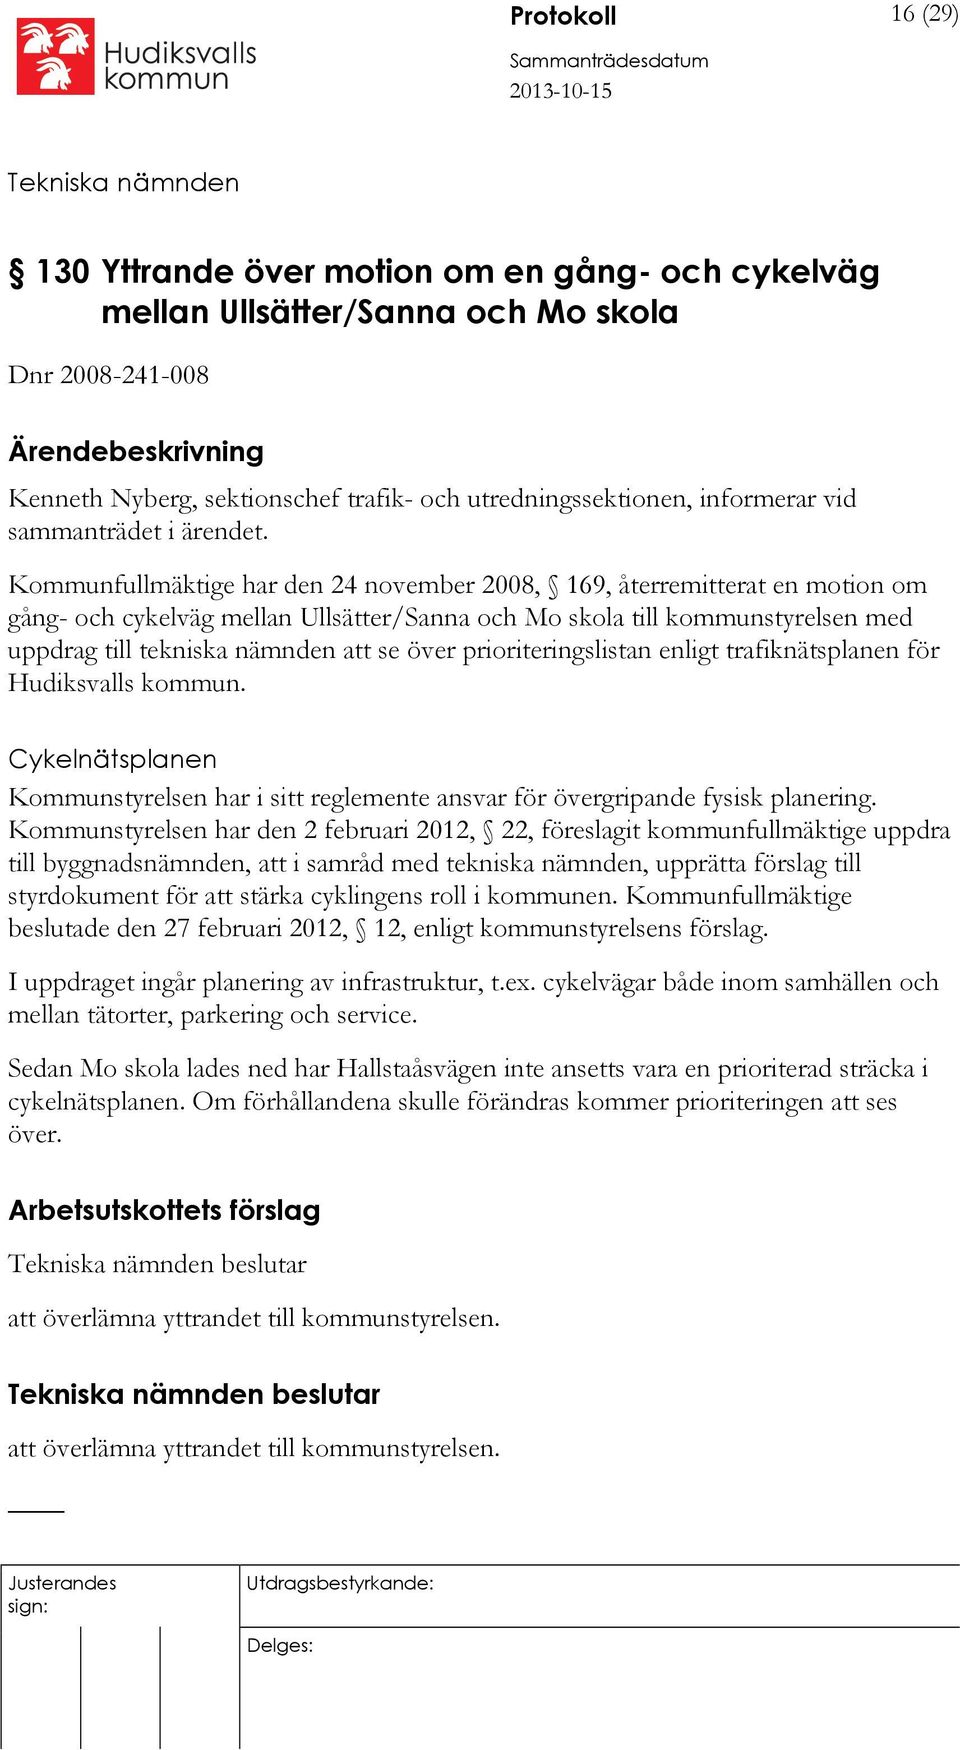 Kommunfullmäktige har den 24 november 2008, 169, återremitterat en motion om gång- och cykelväg mellan Ullsätter/Sanna och Mo skola till kommunstyrelsen med uppdrag till tekniska nämnden att se över